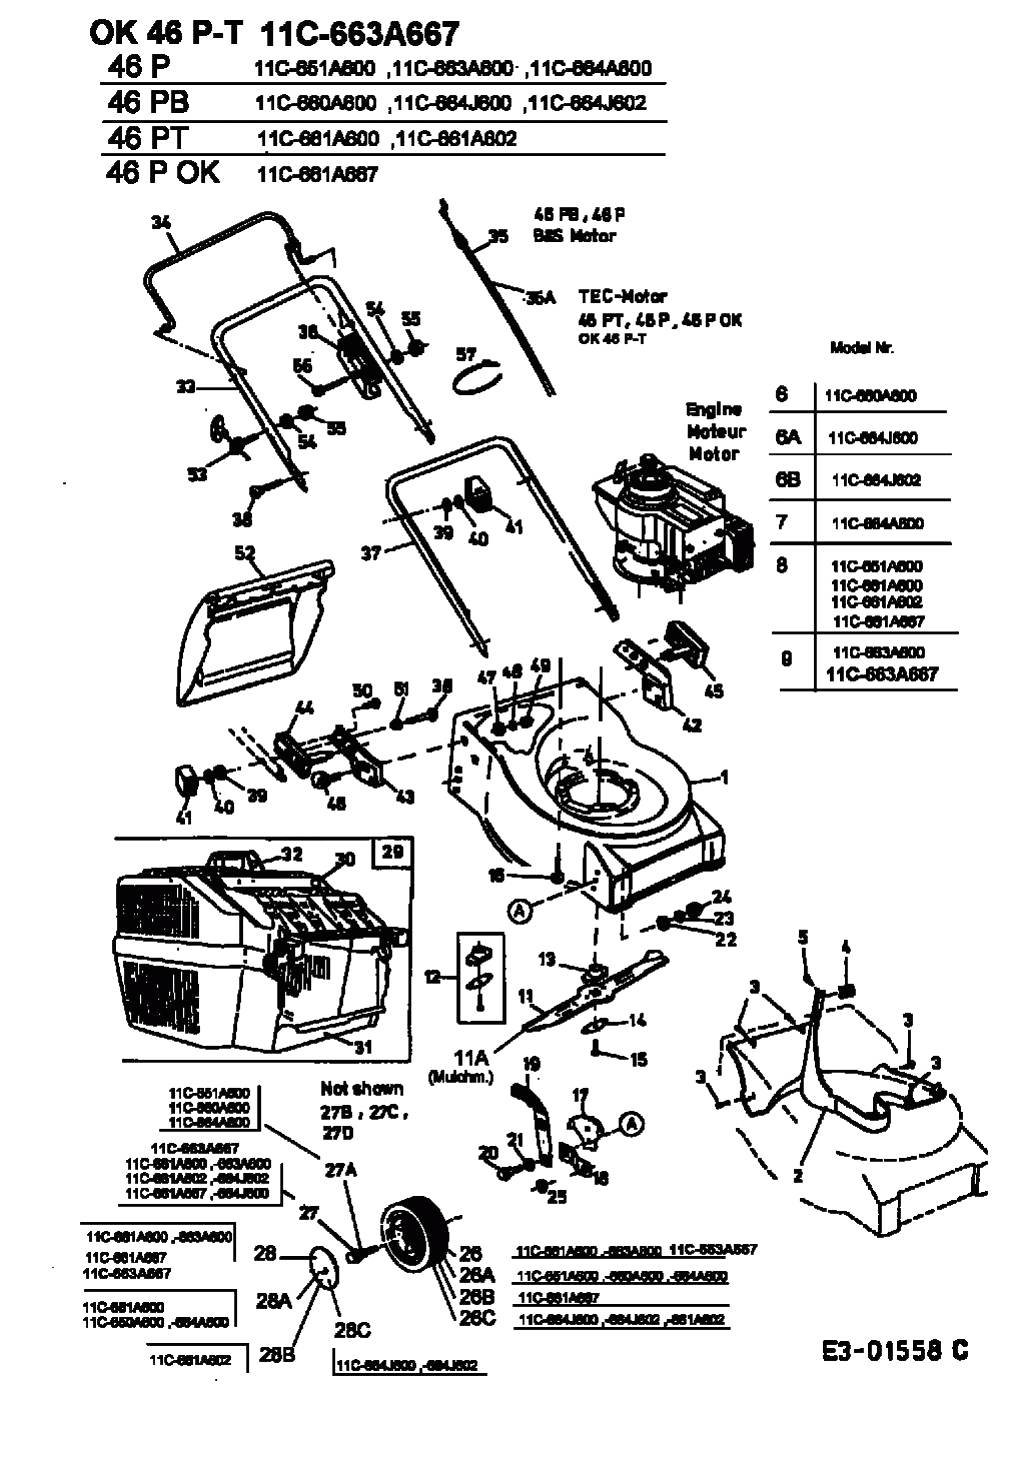 MTD Артикул 11C-664J602 (год выпуска 2003). Основная деталировка